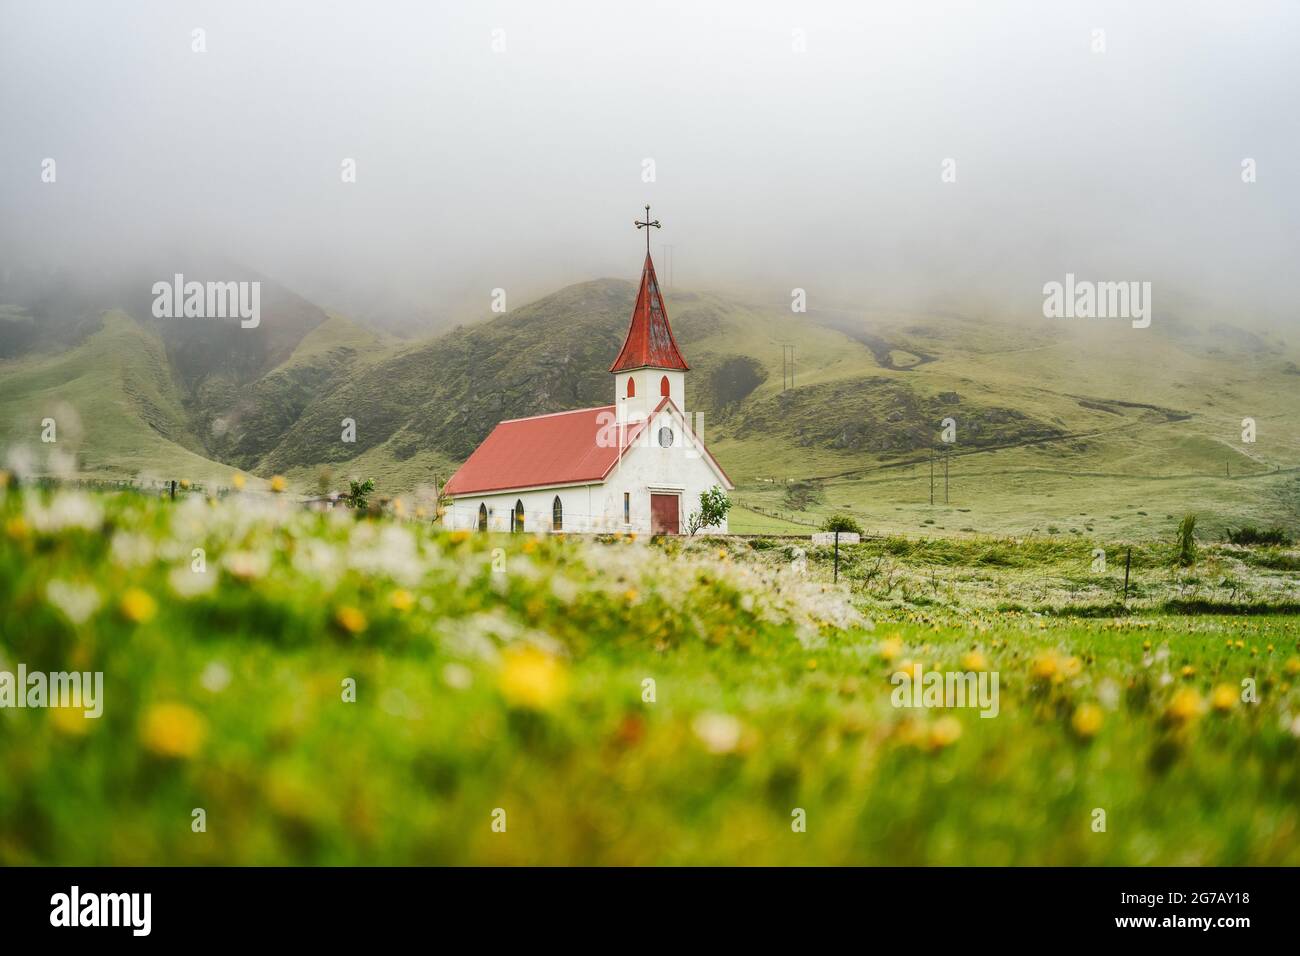 Typische ländliche isländische Kirche mit rotem Dach in der Region Vik. Island. Blütenblume und Laub im Vordergrund Stockfoto